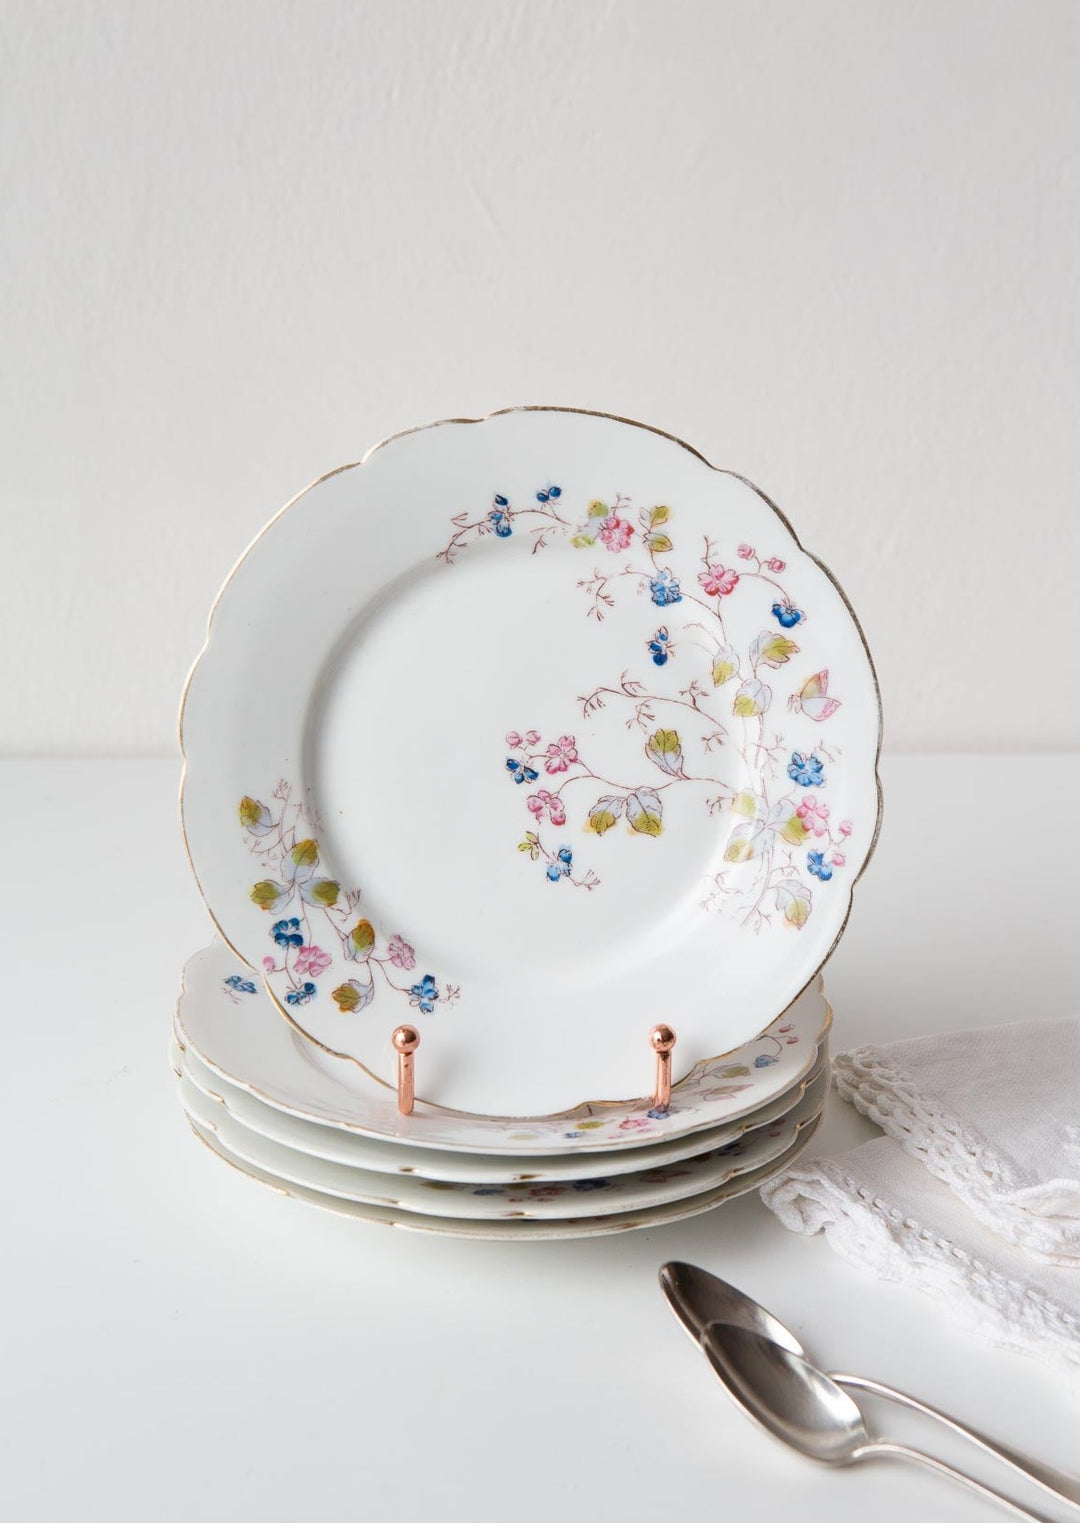 Platos porcelana 20 cm Vieux Paris c. 1900 hand painted french porcelain plates